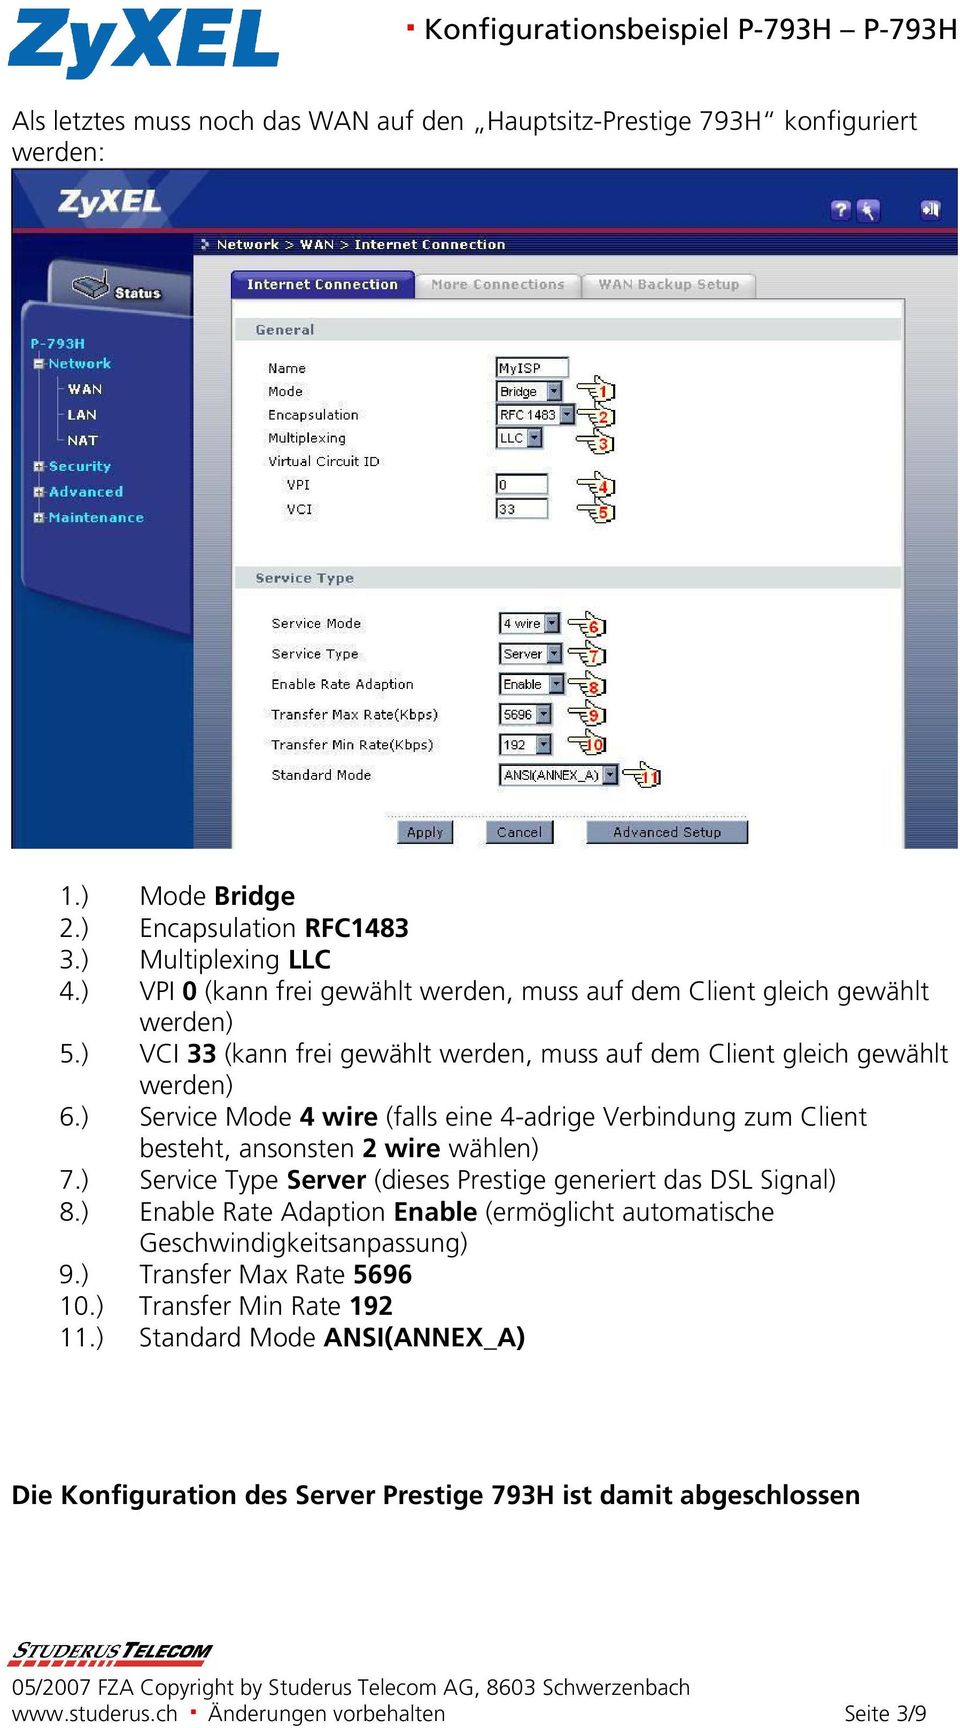 ) Service Mode 4 wire (falls eine 4-adrige Verbindung zum Client besteht, ansonsten 2 wire wählen) 7.) Service Type Server (dieses Prestige generiert das DSL Signal) 8.